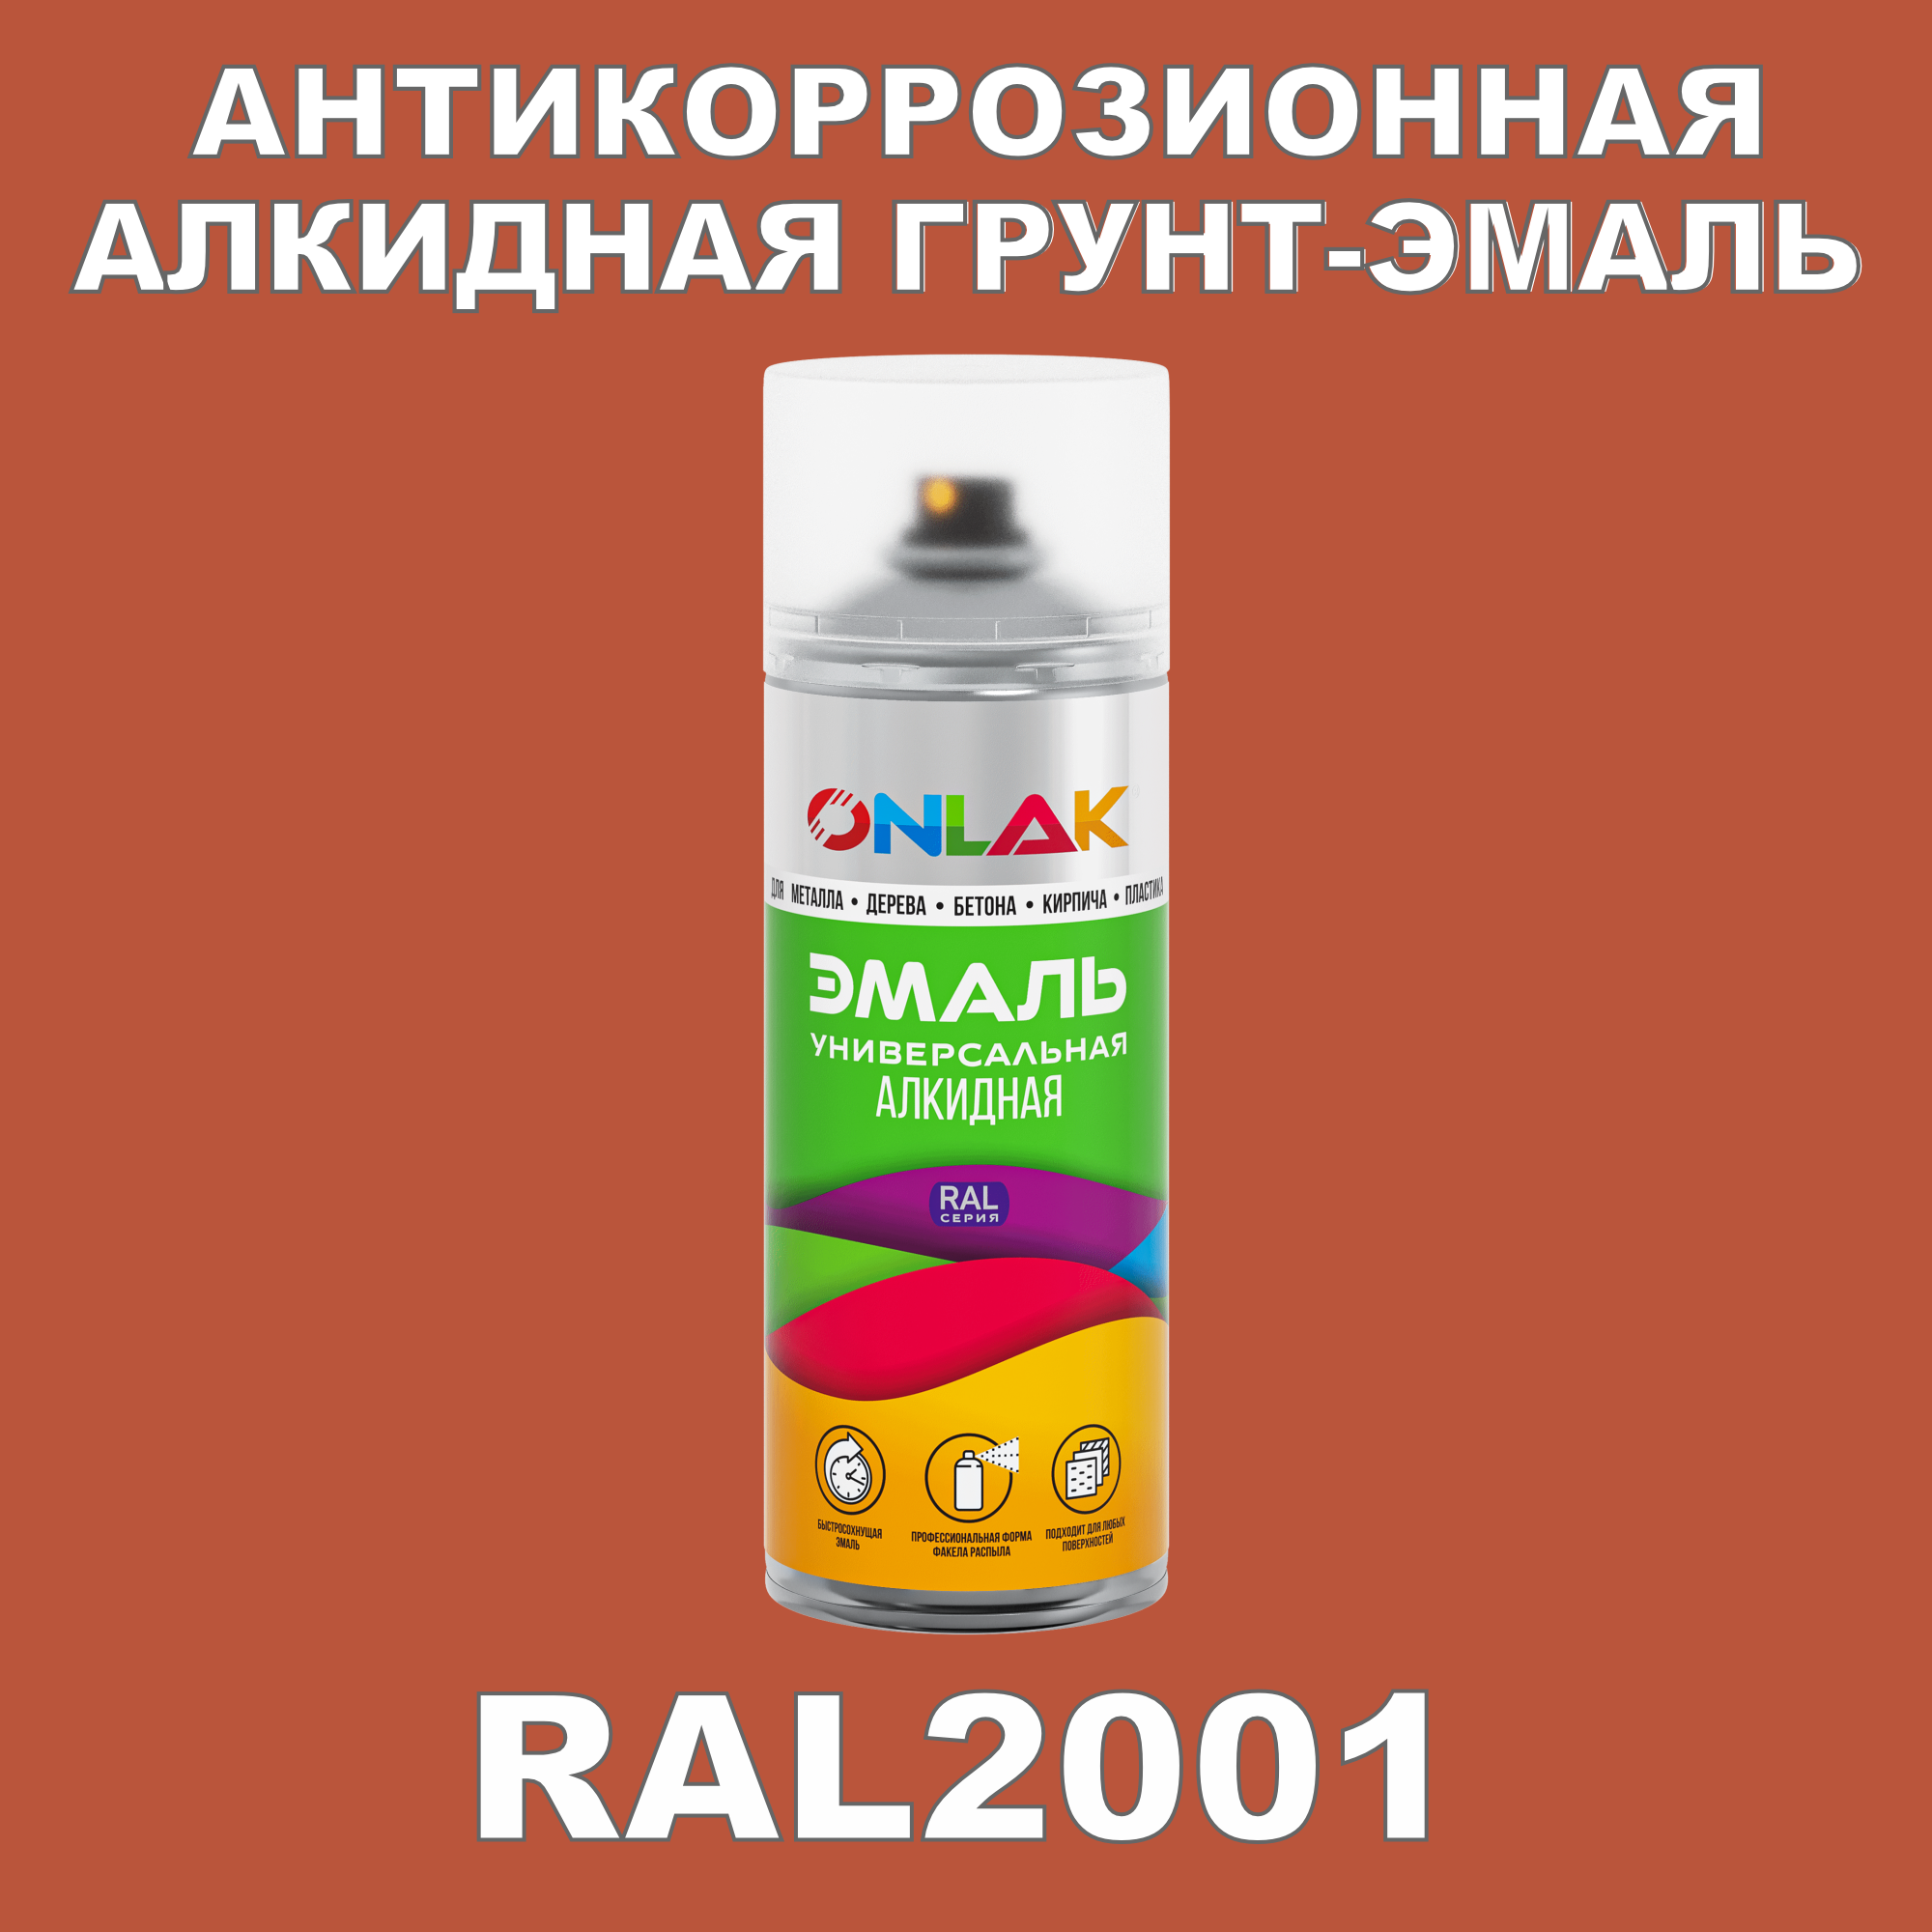 Антикоррозионная грунт-эмаль ONLAK RAL2001 полуматовая для металла и защиты от ржавчины